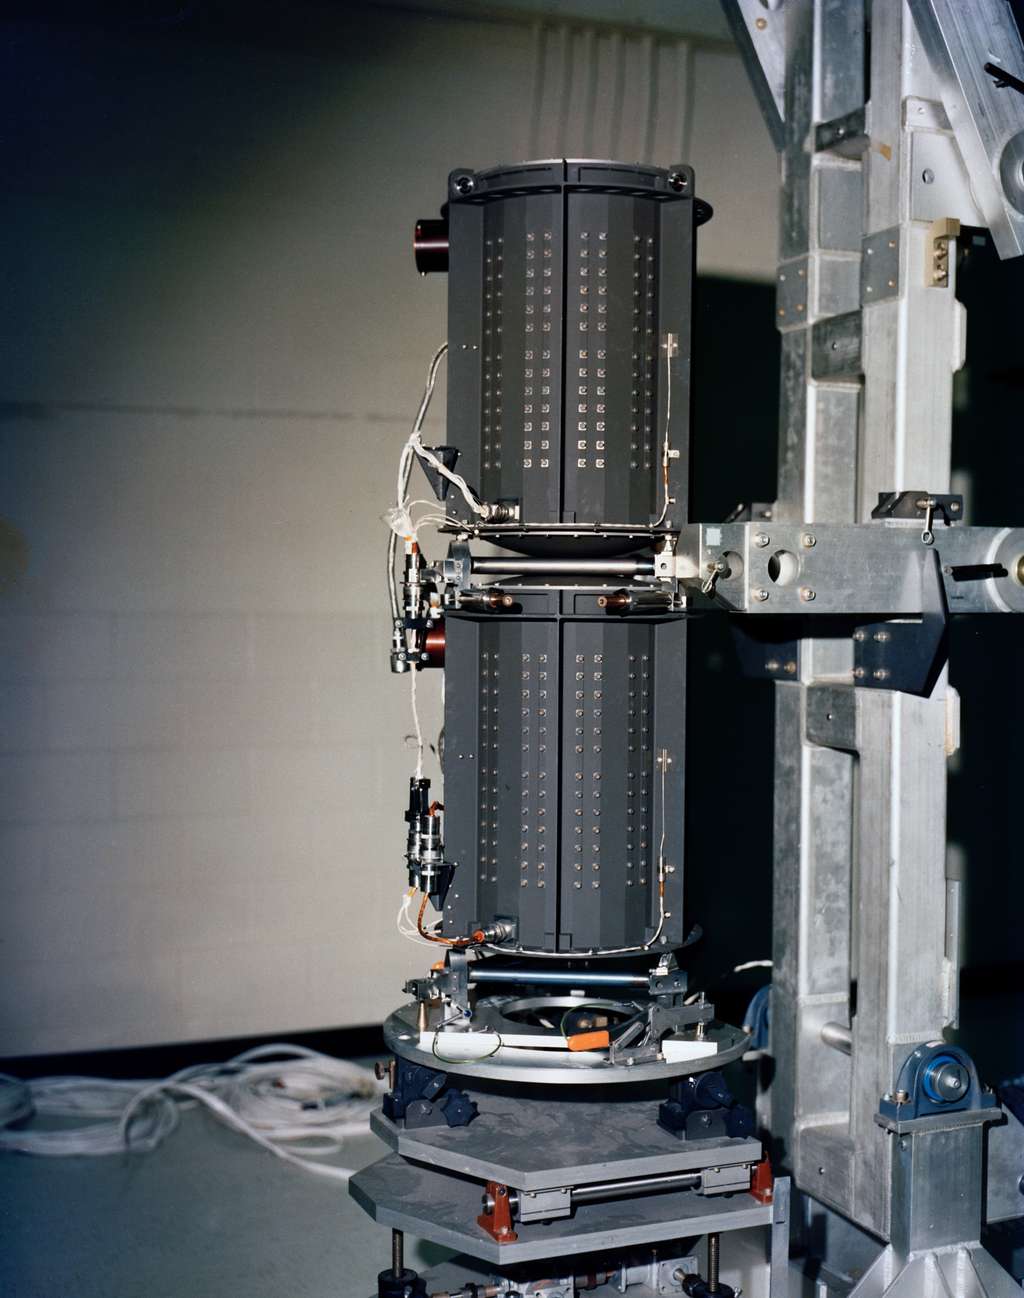 Un des trois RTG de Voyager 2, qui produit de l'électricité à partir de la chaleur générée par la désintégration de l'uranium-238 à l'intérieur. © Nasa, JPL-Caltech